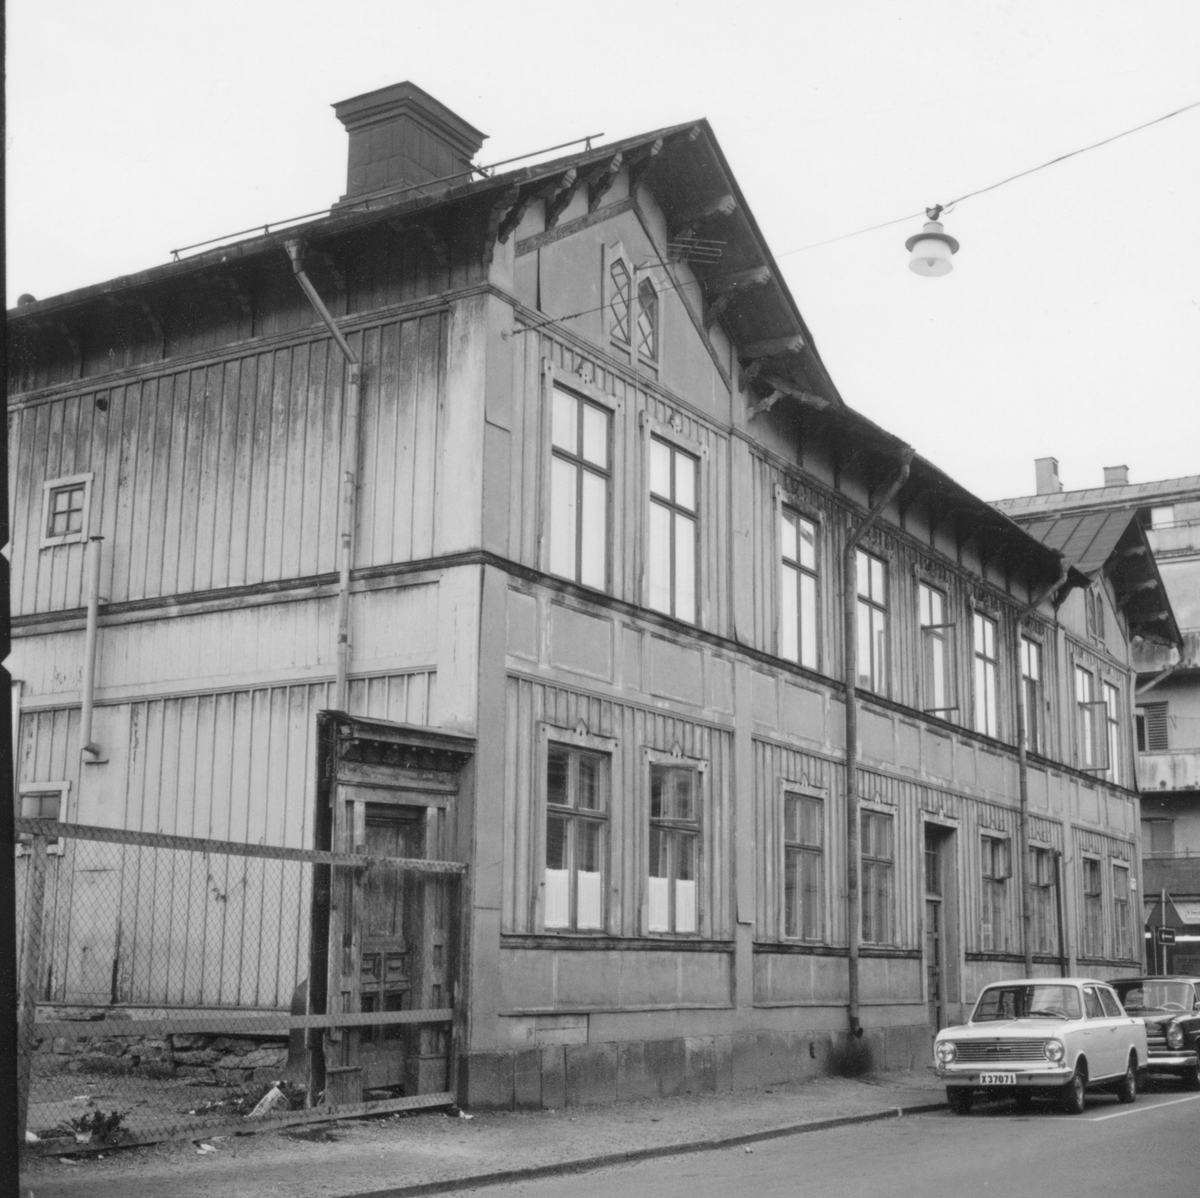 Kvarteret Nattväktaren, hörnet Kyrkogatan/ Norra Kansligatan.
Sistnämda gatudel är numera bebyggd: Tempo varuhus.